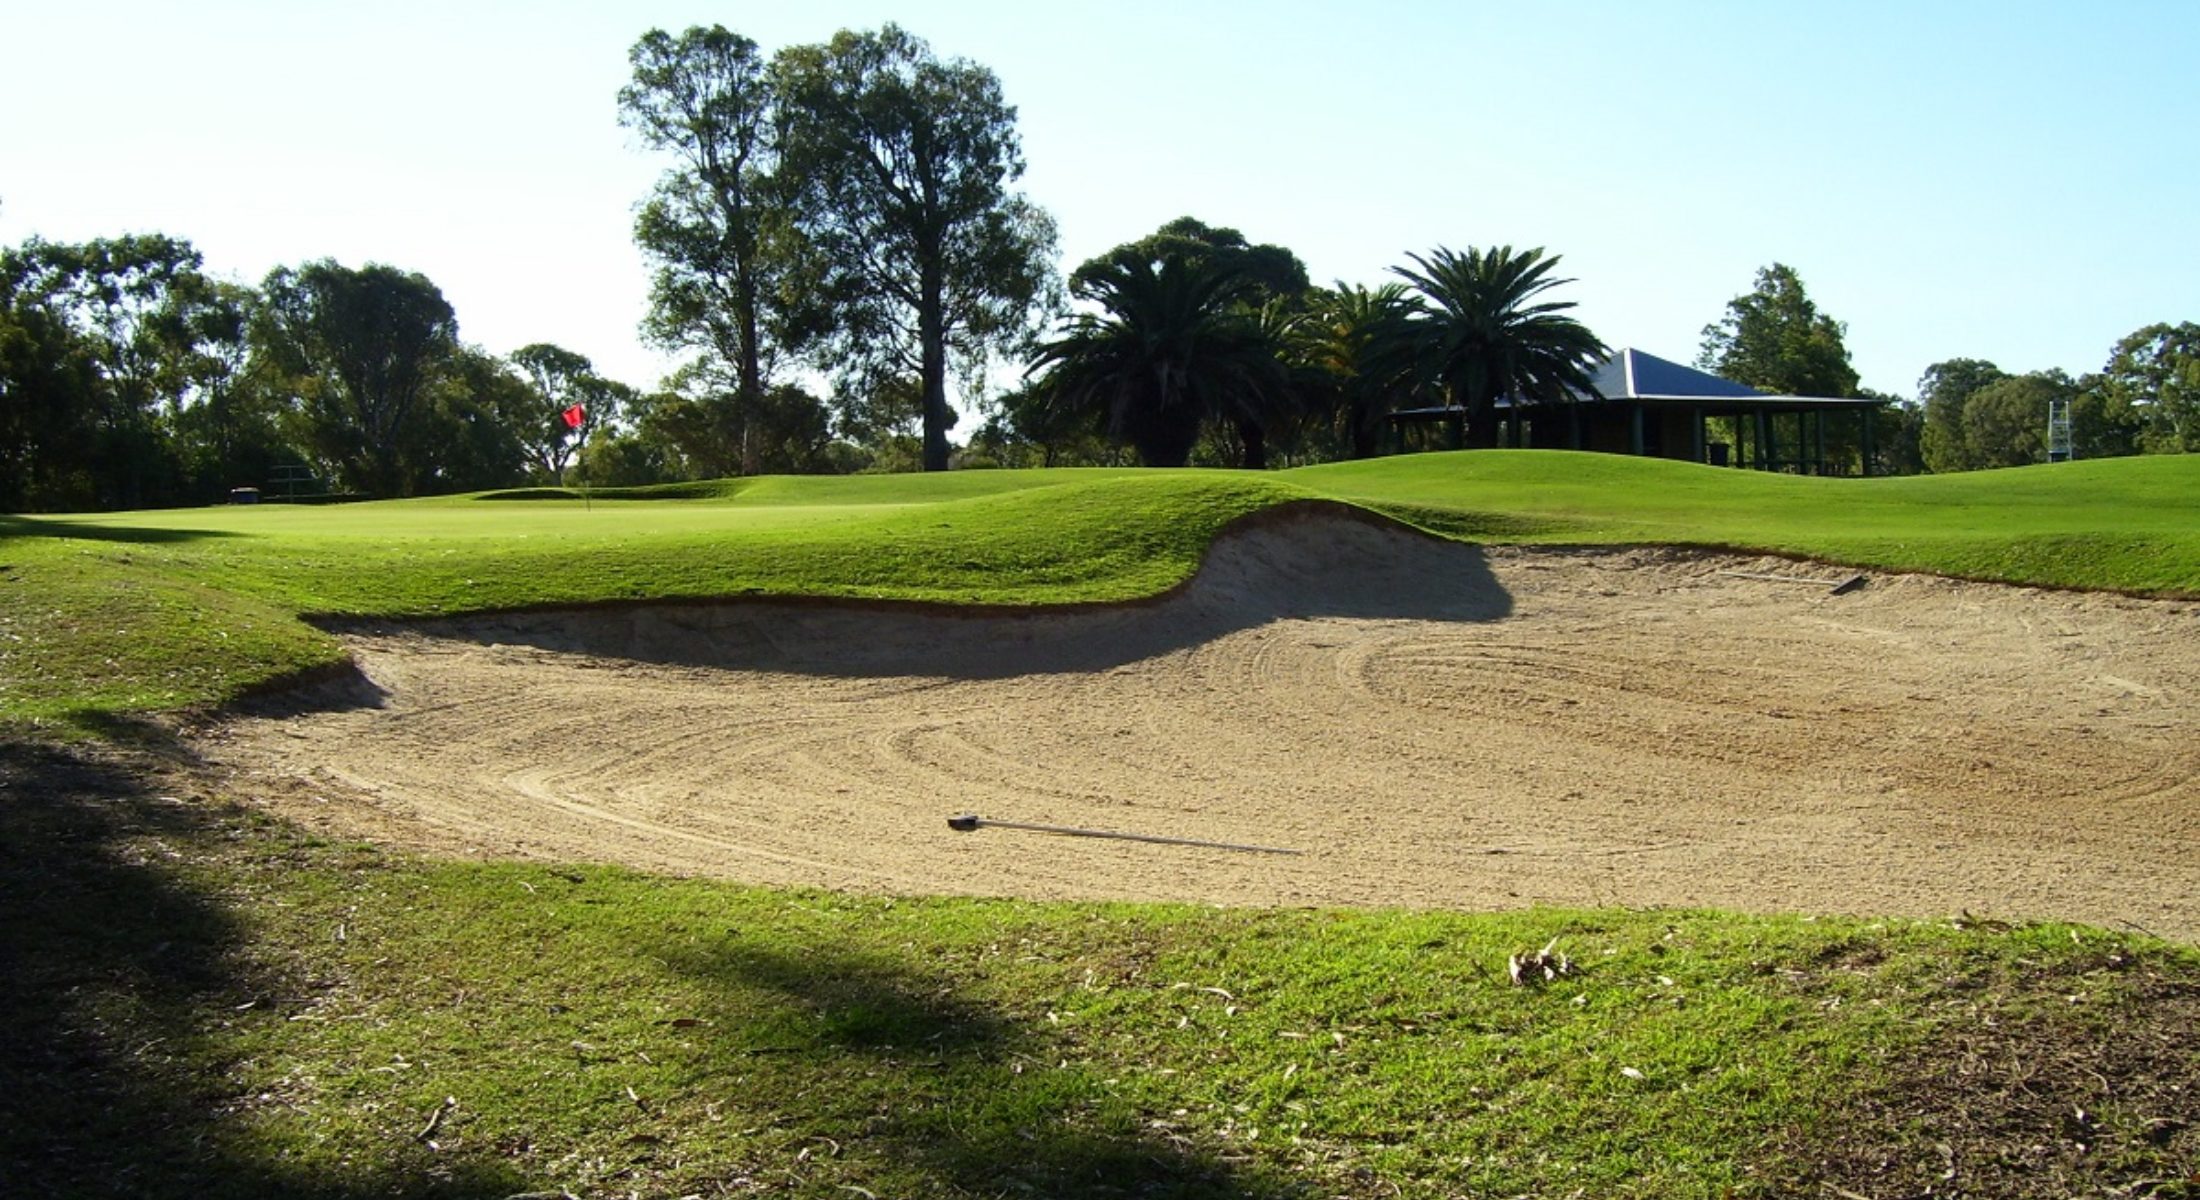 Redcliffe Golf Club Moreton Bay Region Near Brisbane Green Golf Course Sand